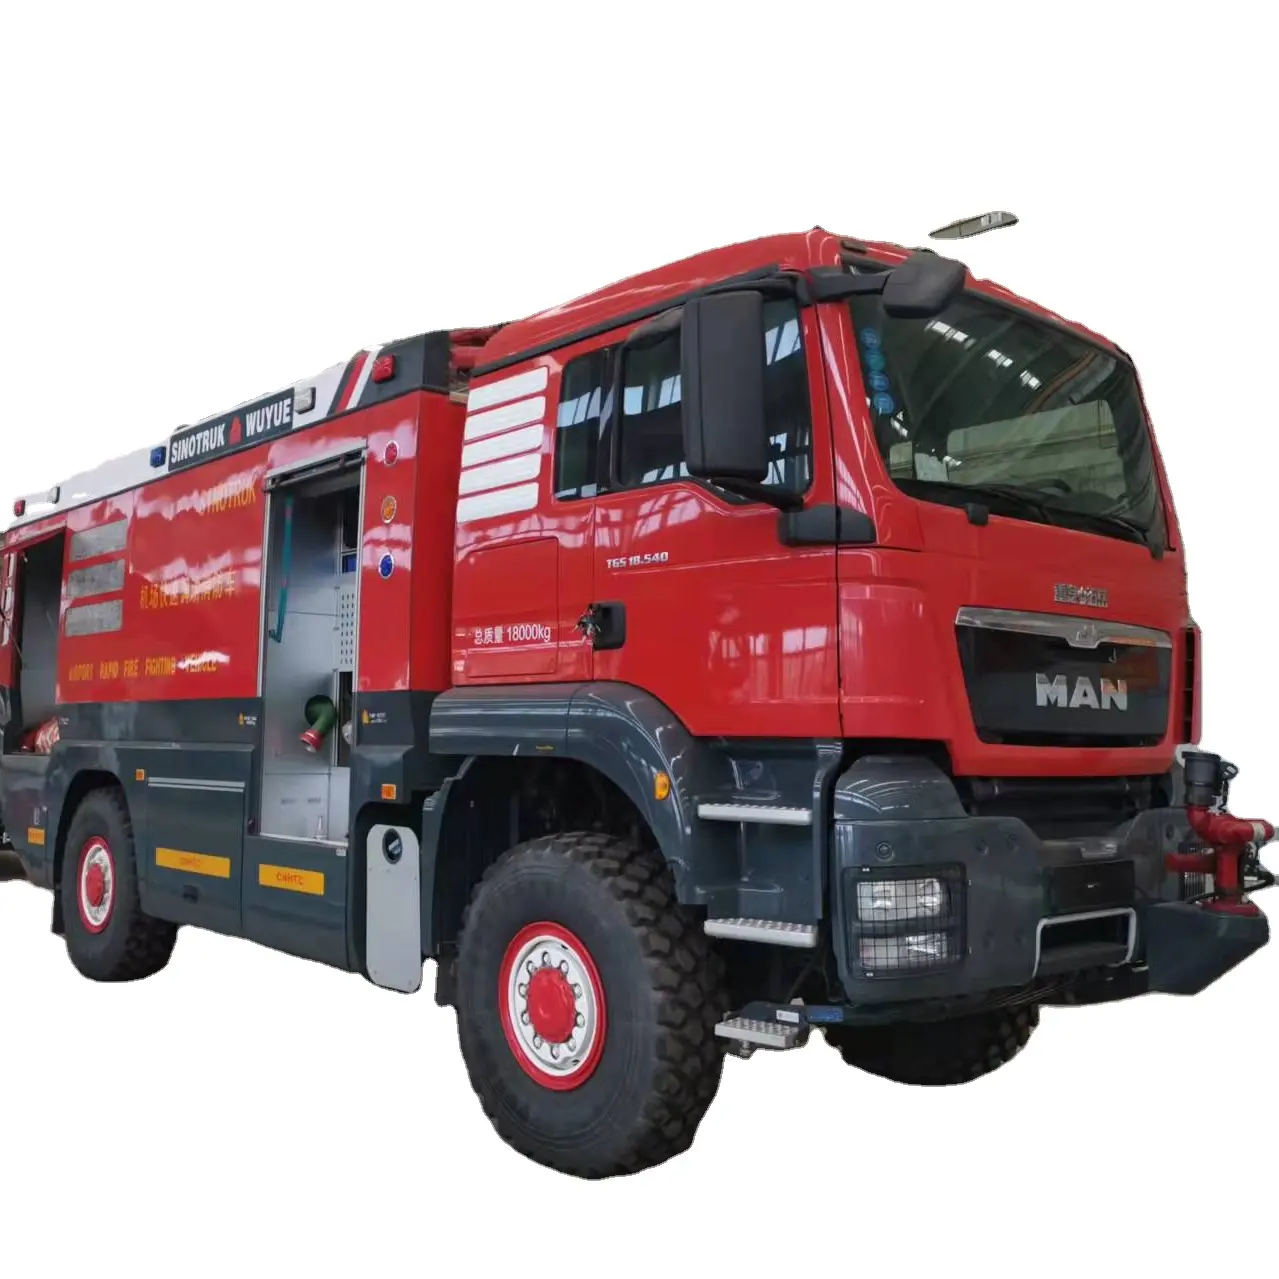 Brand Heavy Duty Water Foam Powder Combined Fire Fighting Truck Dry Powder Fire Truck